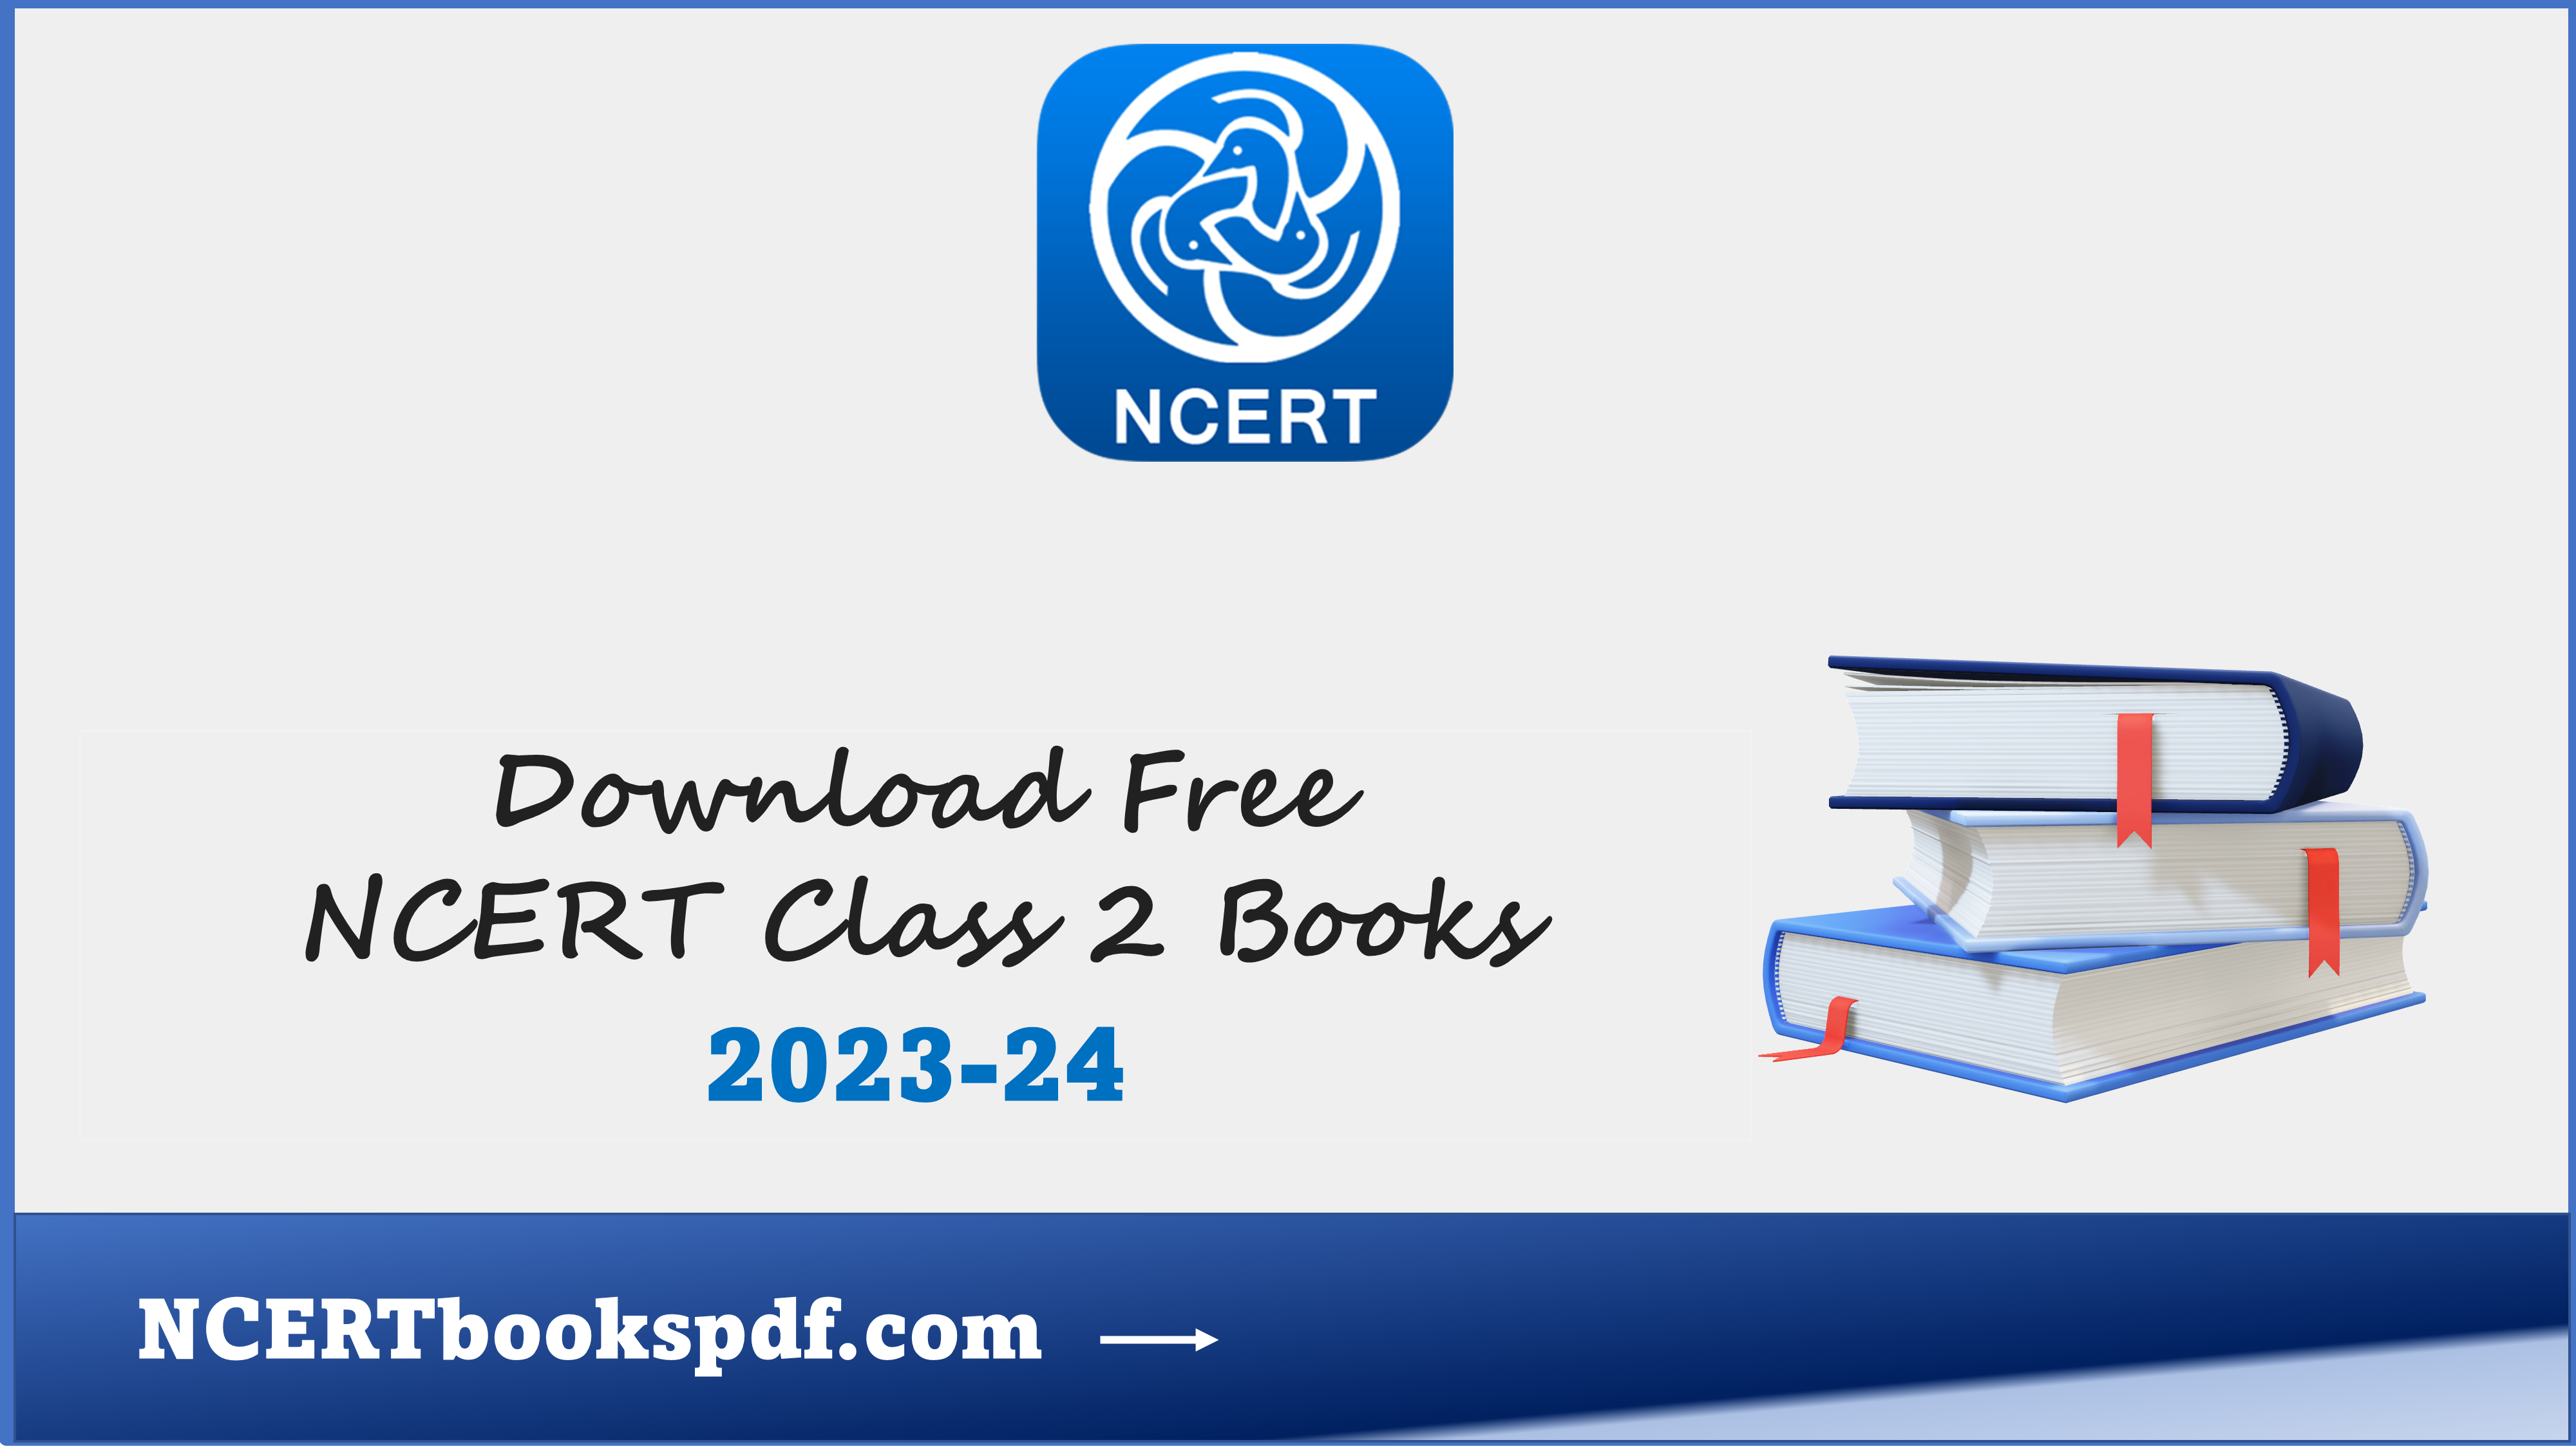 NCERT BOOKS CLASS 2